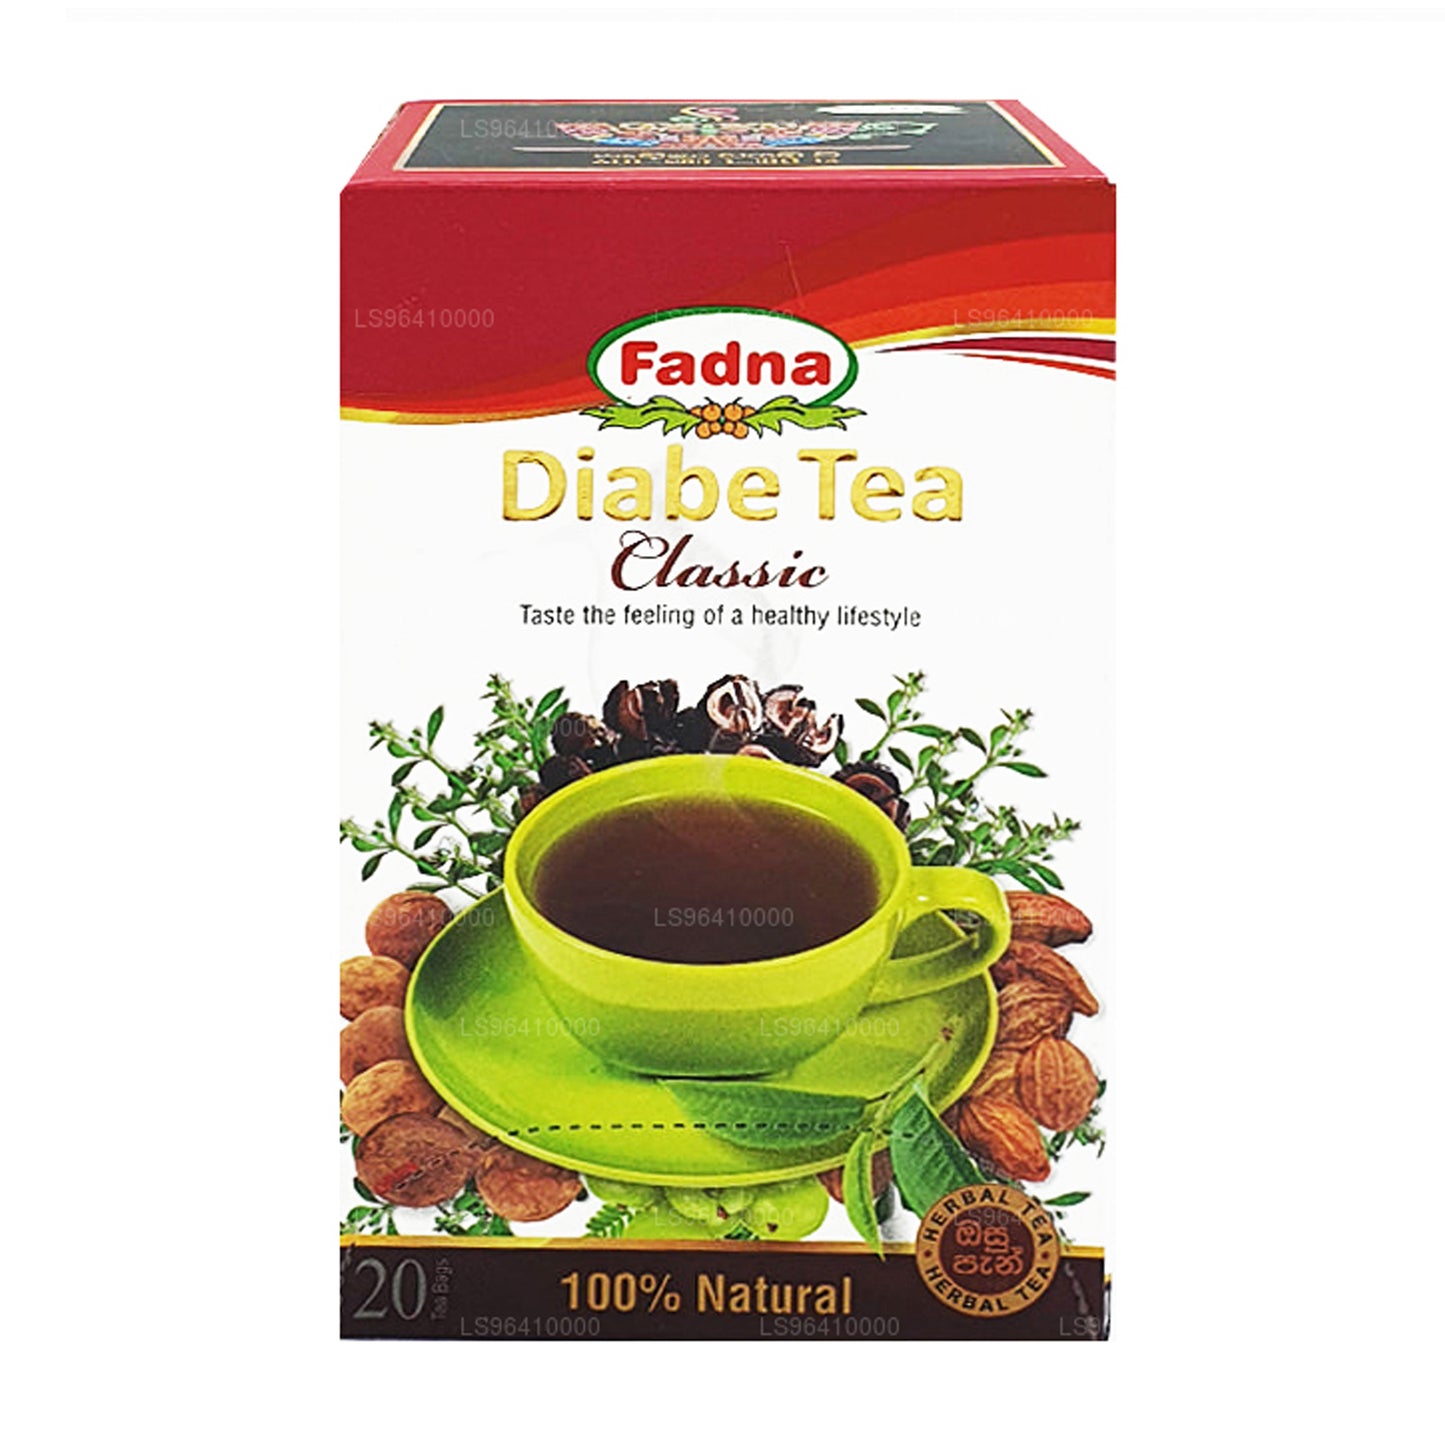 Fadna Diabe Tea (40g) 20 bustine di tè